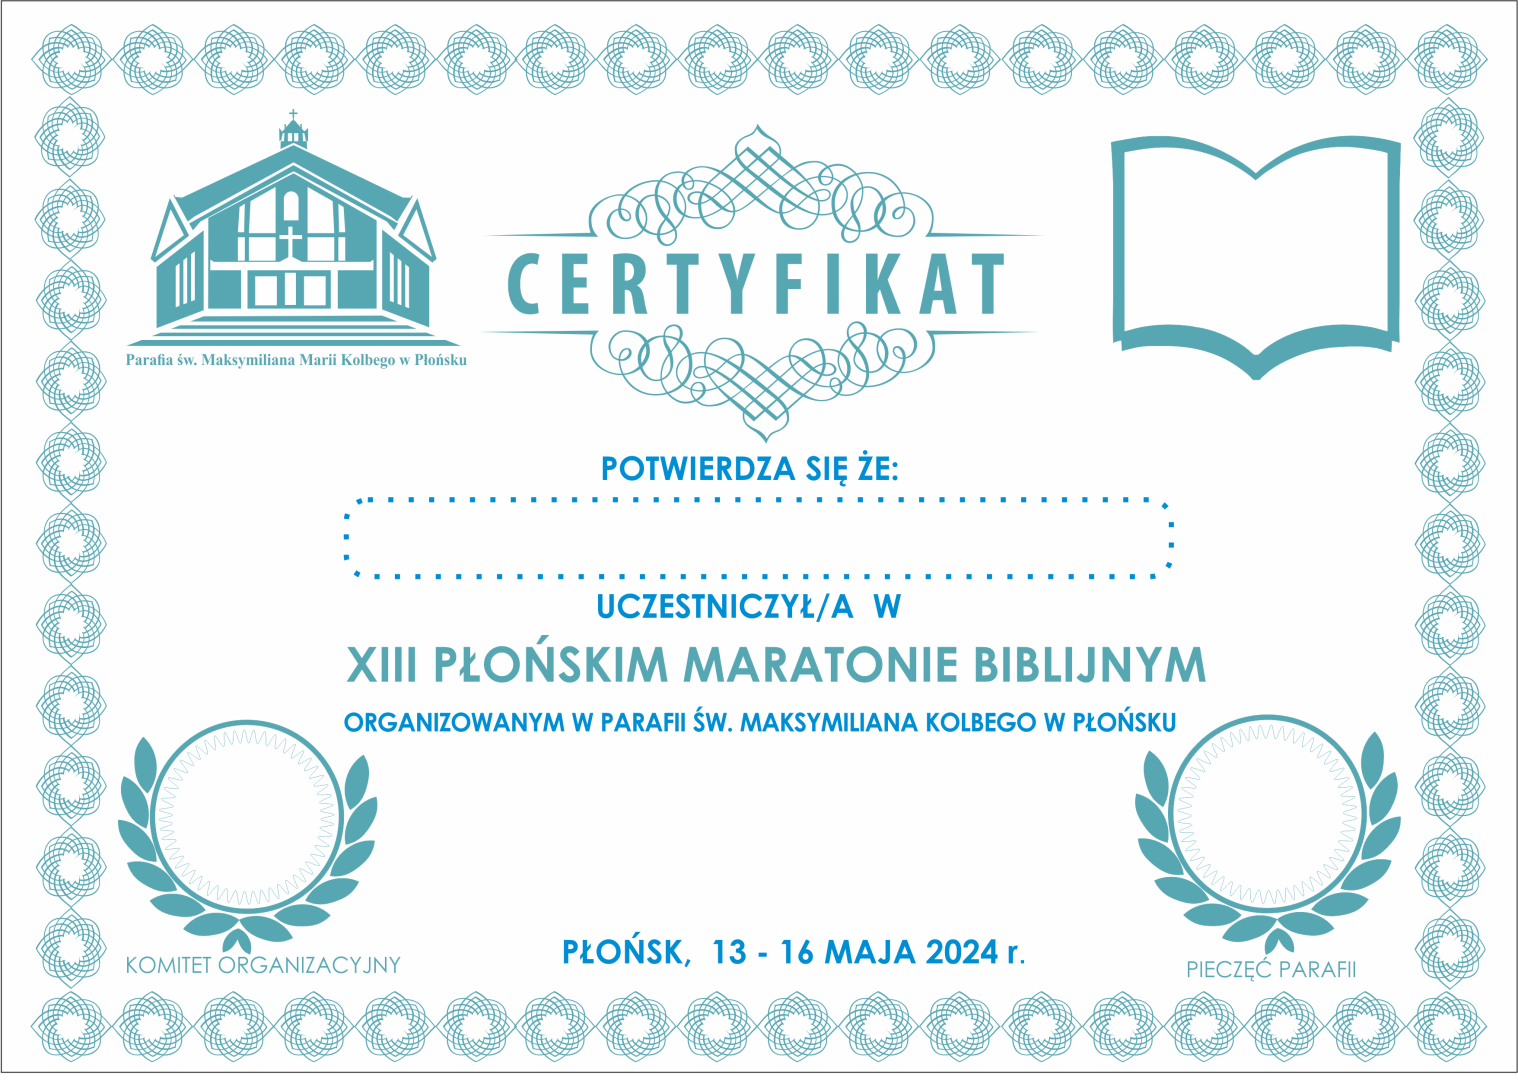 Certyfikat udziału w Maratonie Biblijnym